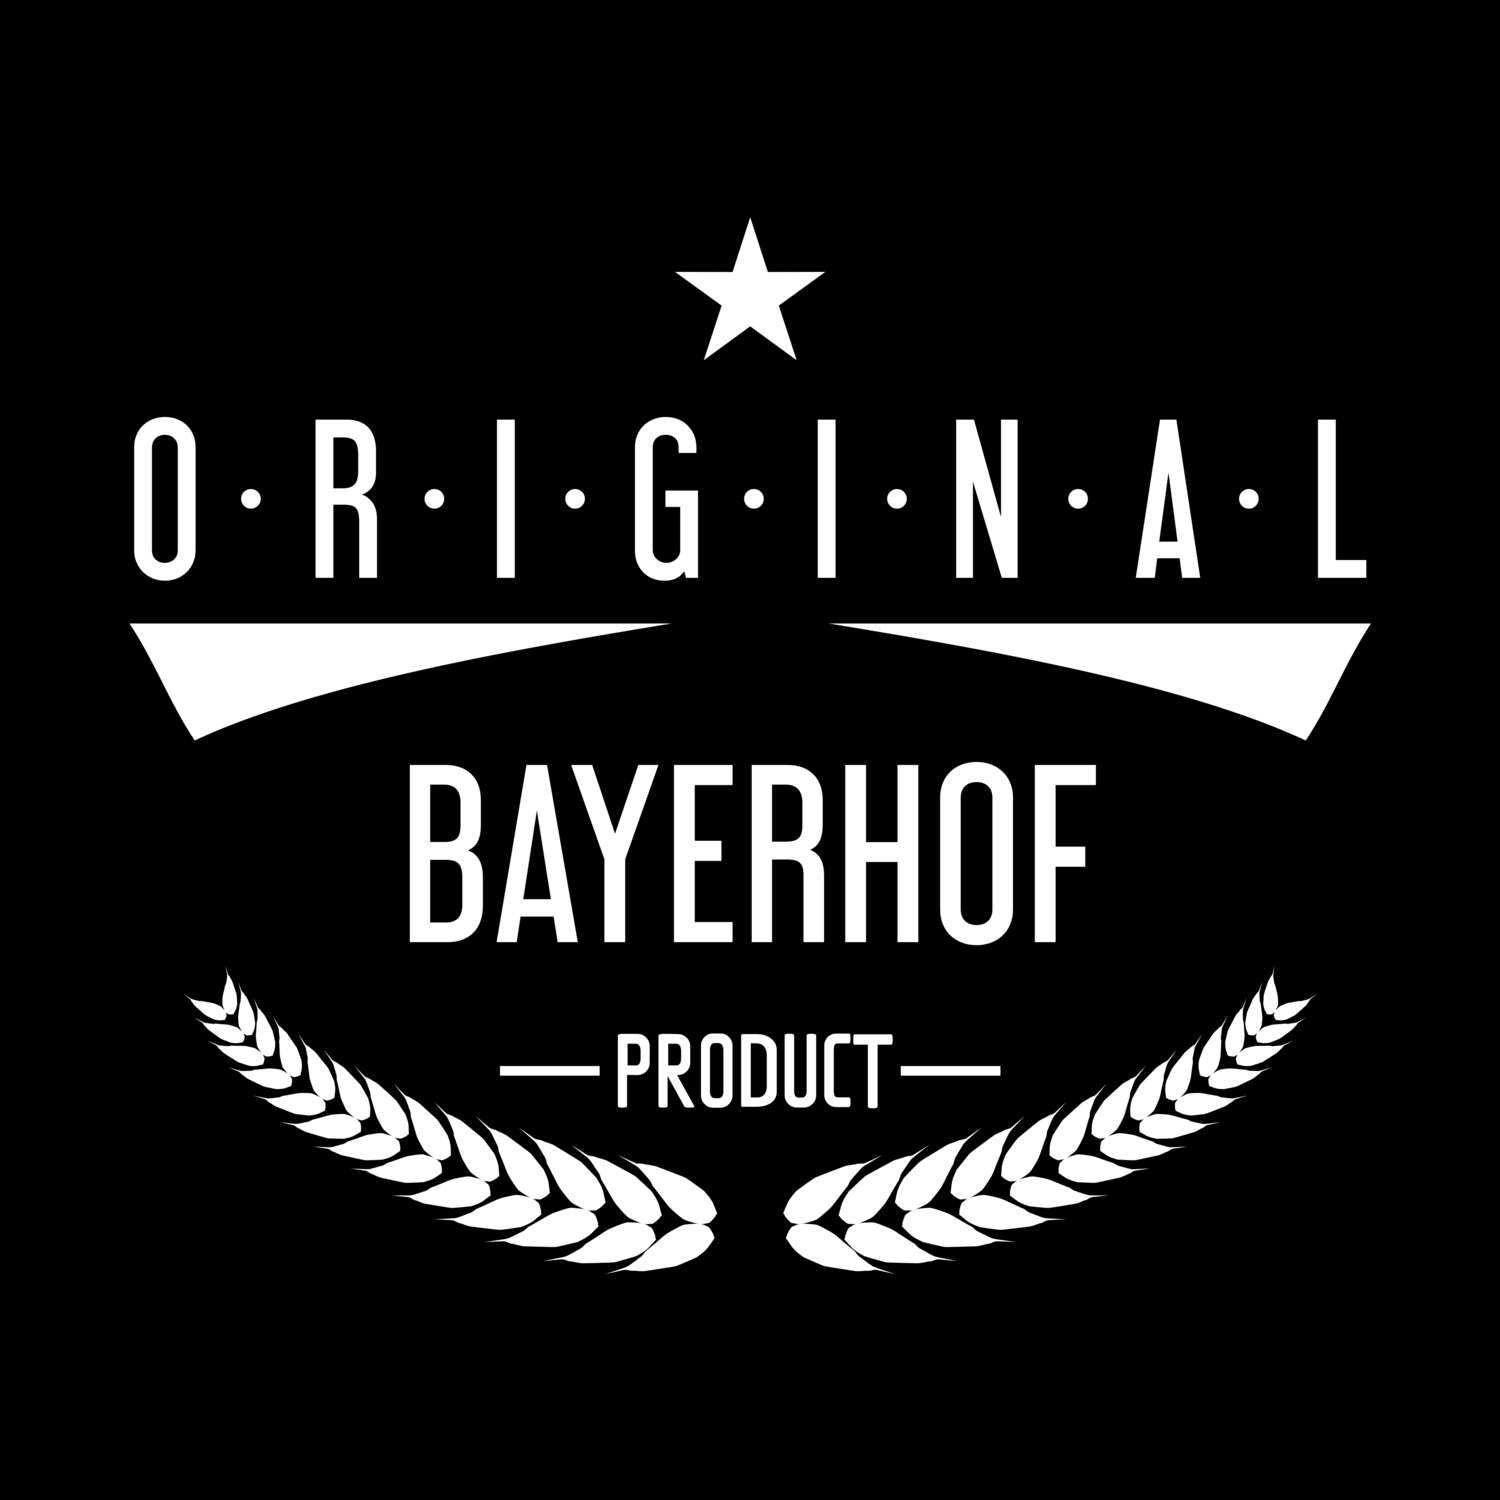 Bayerhof T-Shirt »Original Product«